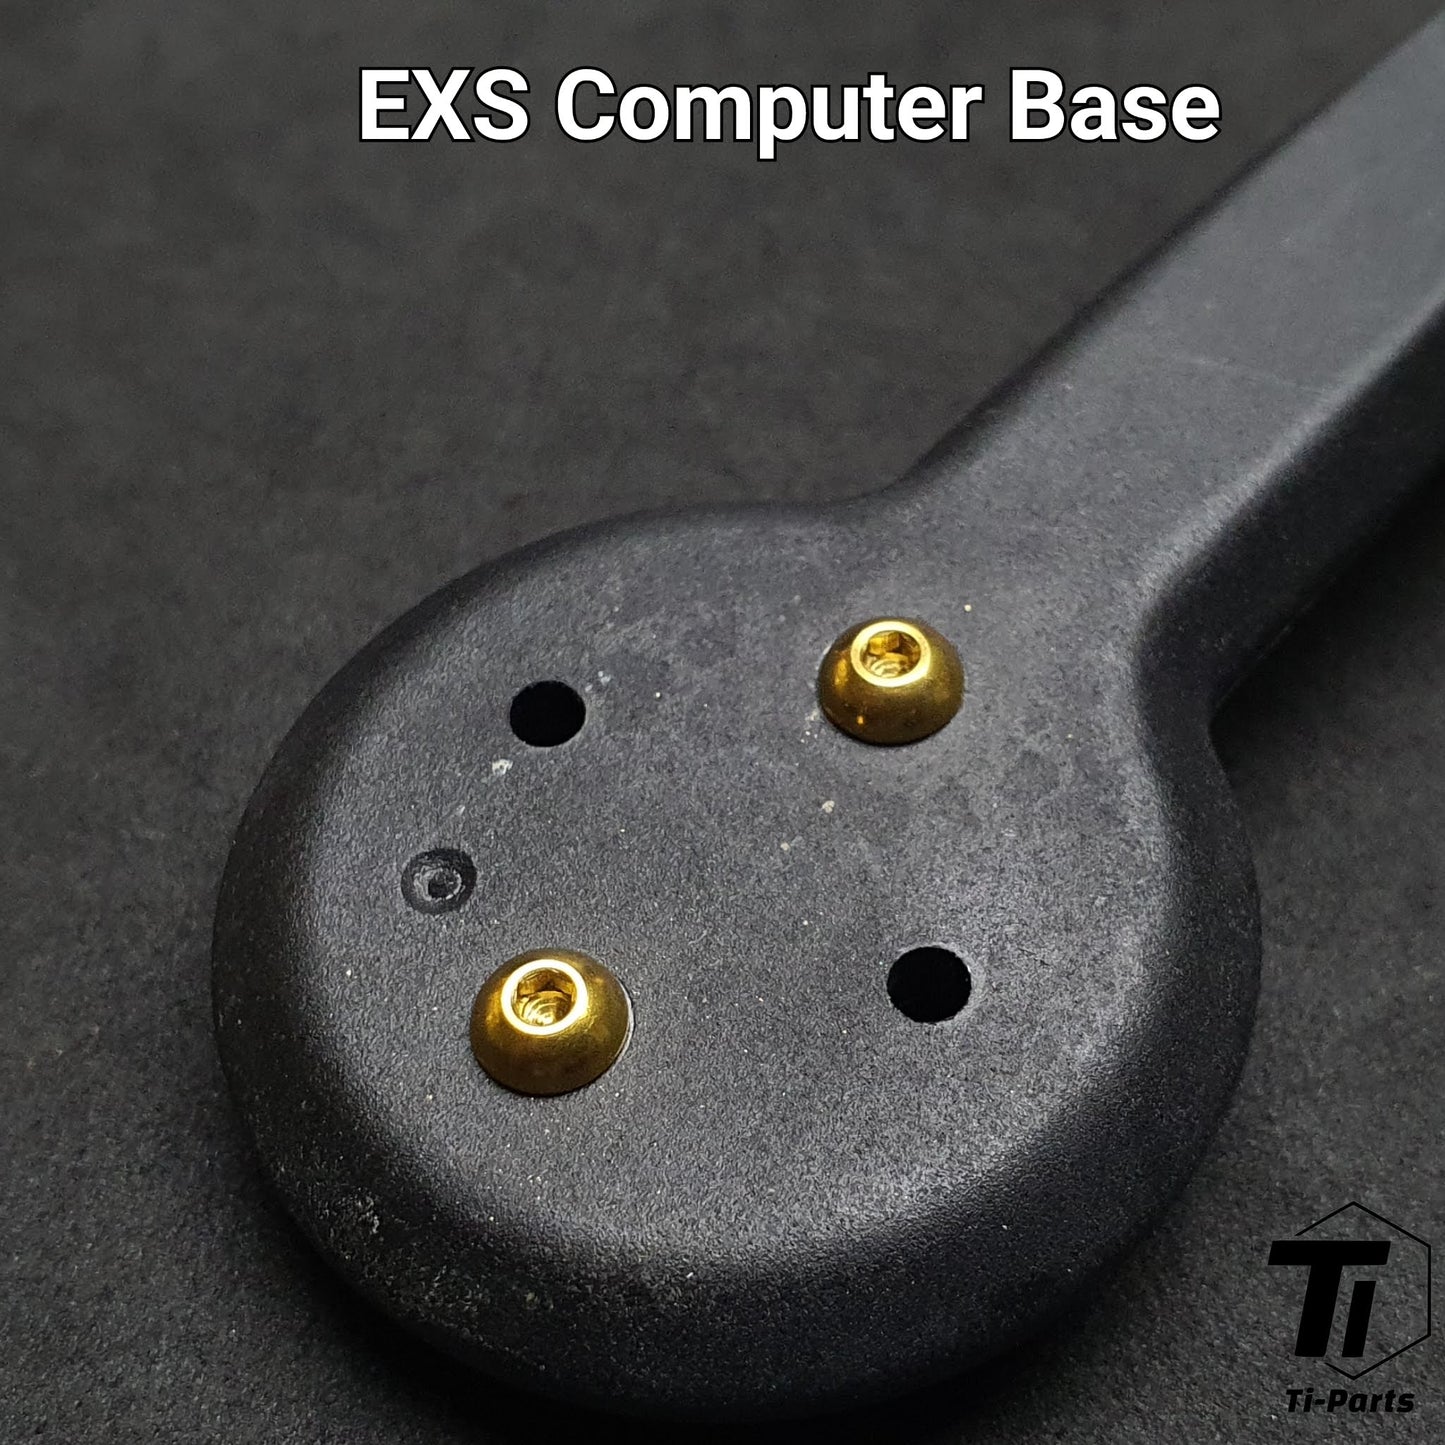 Śruba tytanowa do uchwytu komputerowego EXS Aerover Dropbar | Śruba mocująca miernik | Tiparts Grade 5 Tytan Singapur